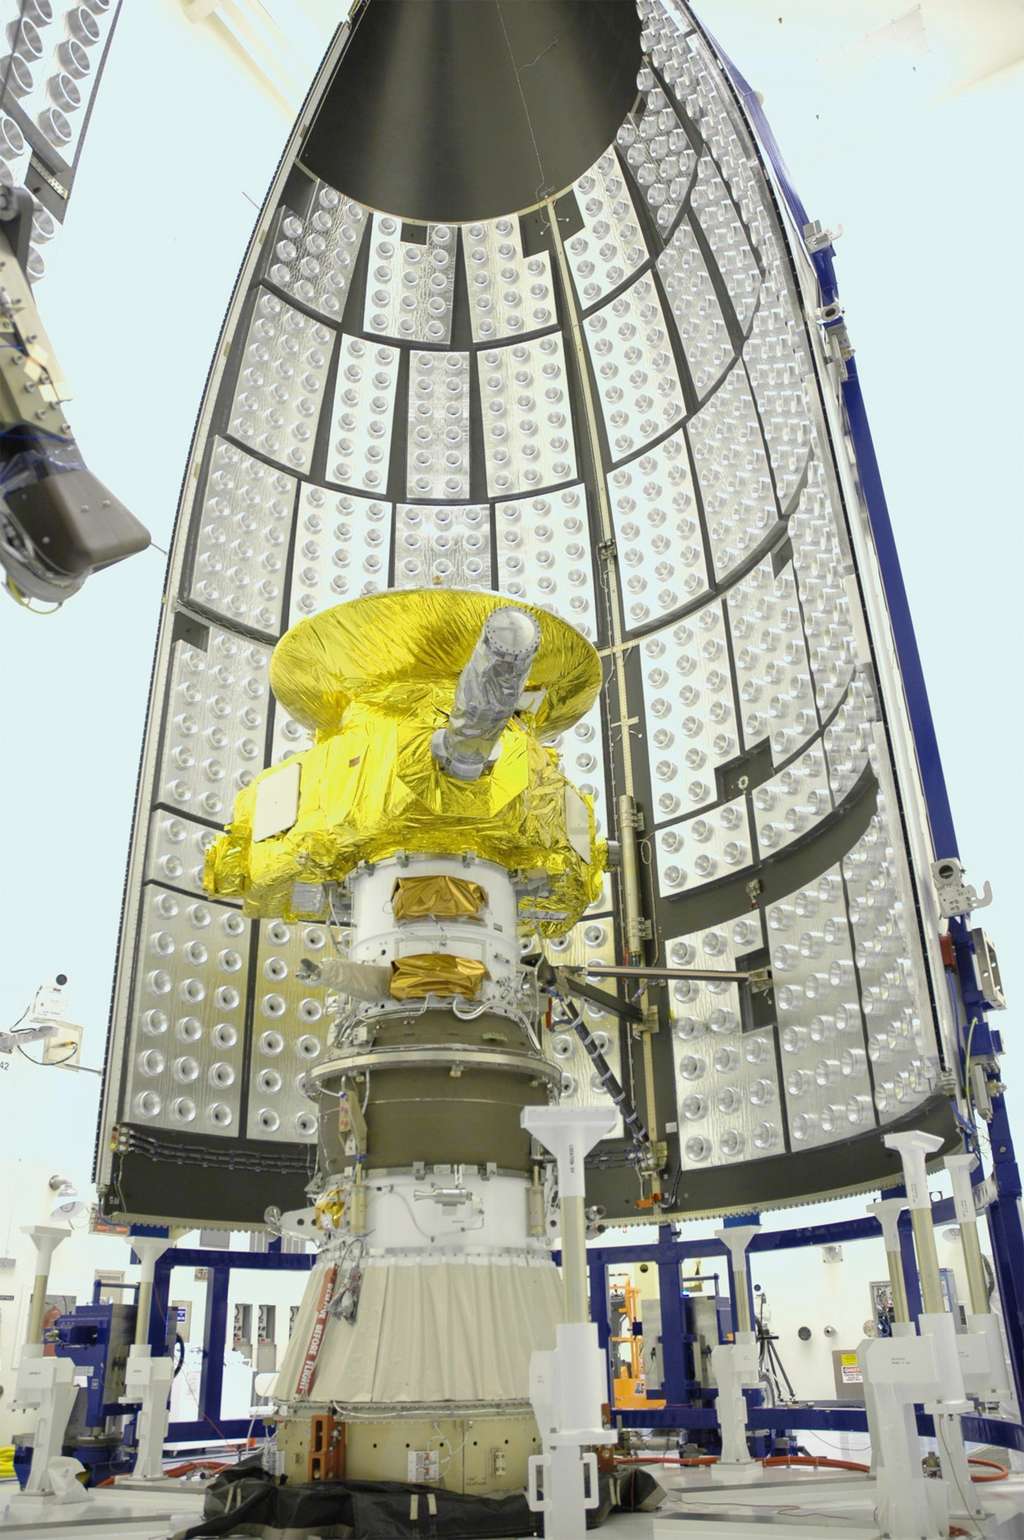 New Horizons présente une forme triangulaire dont les côtés mesurent 2,1 m et 2,7 m. Elle est surmontée d'une antenne parabolique à haut gain de 2,1 m de diamètre. L'ensemble pesait 478 kg au départ de la Terre, incluant 77 kg de propergol et 30 kg d'instruments scientifiques. © Nasa